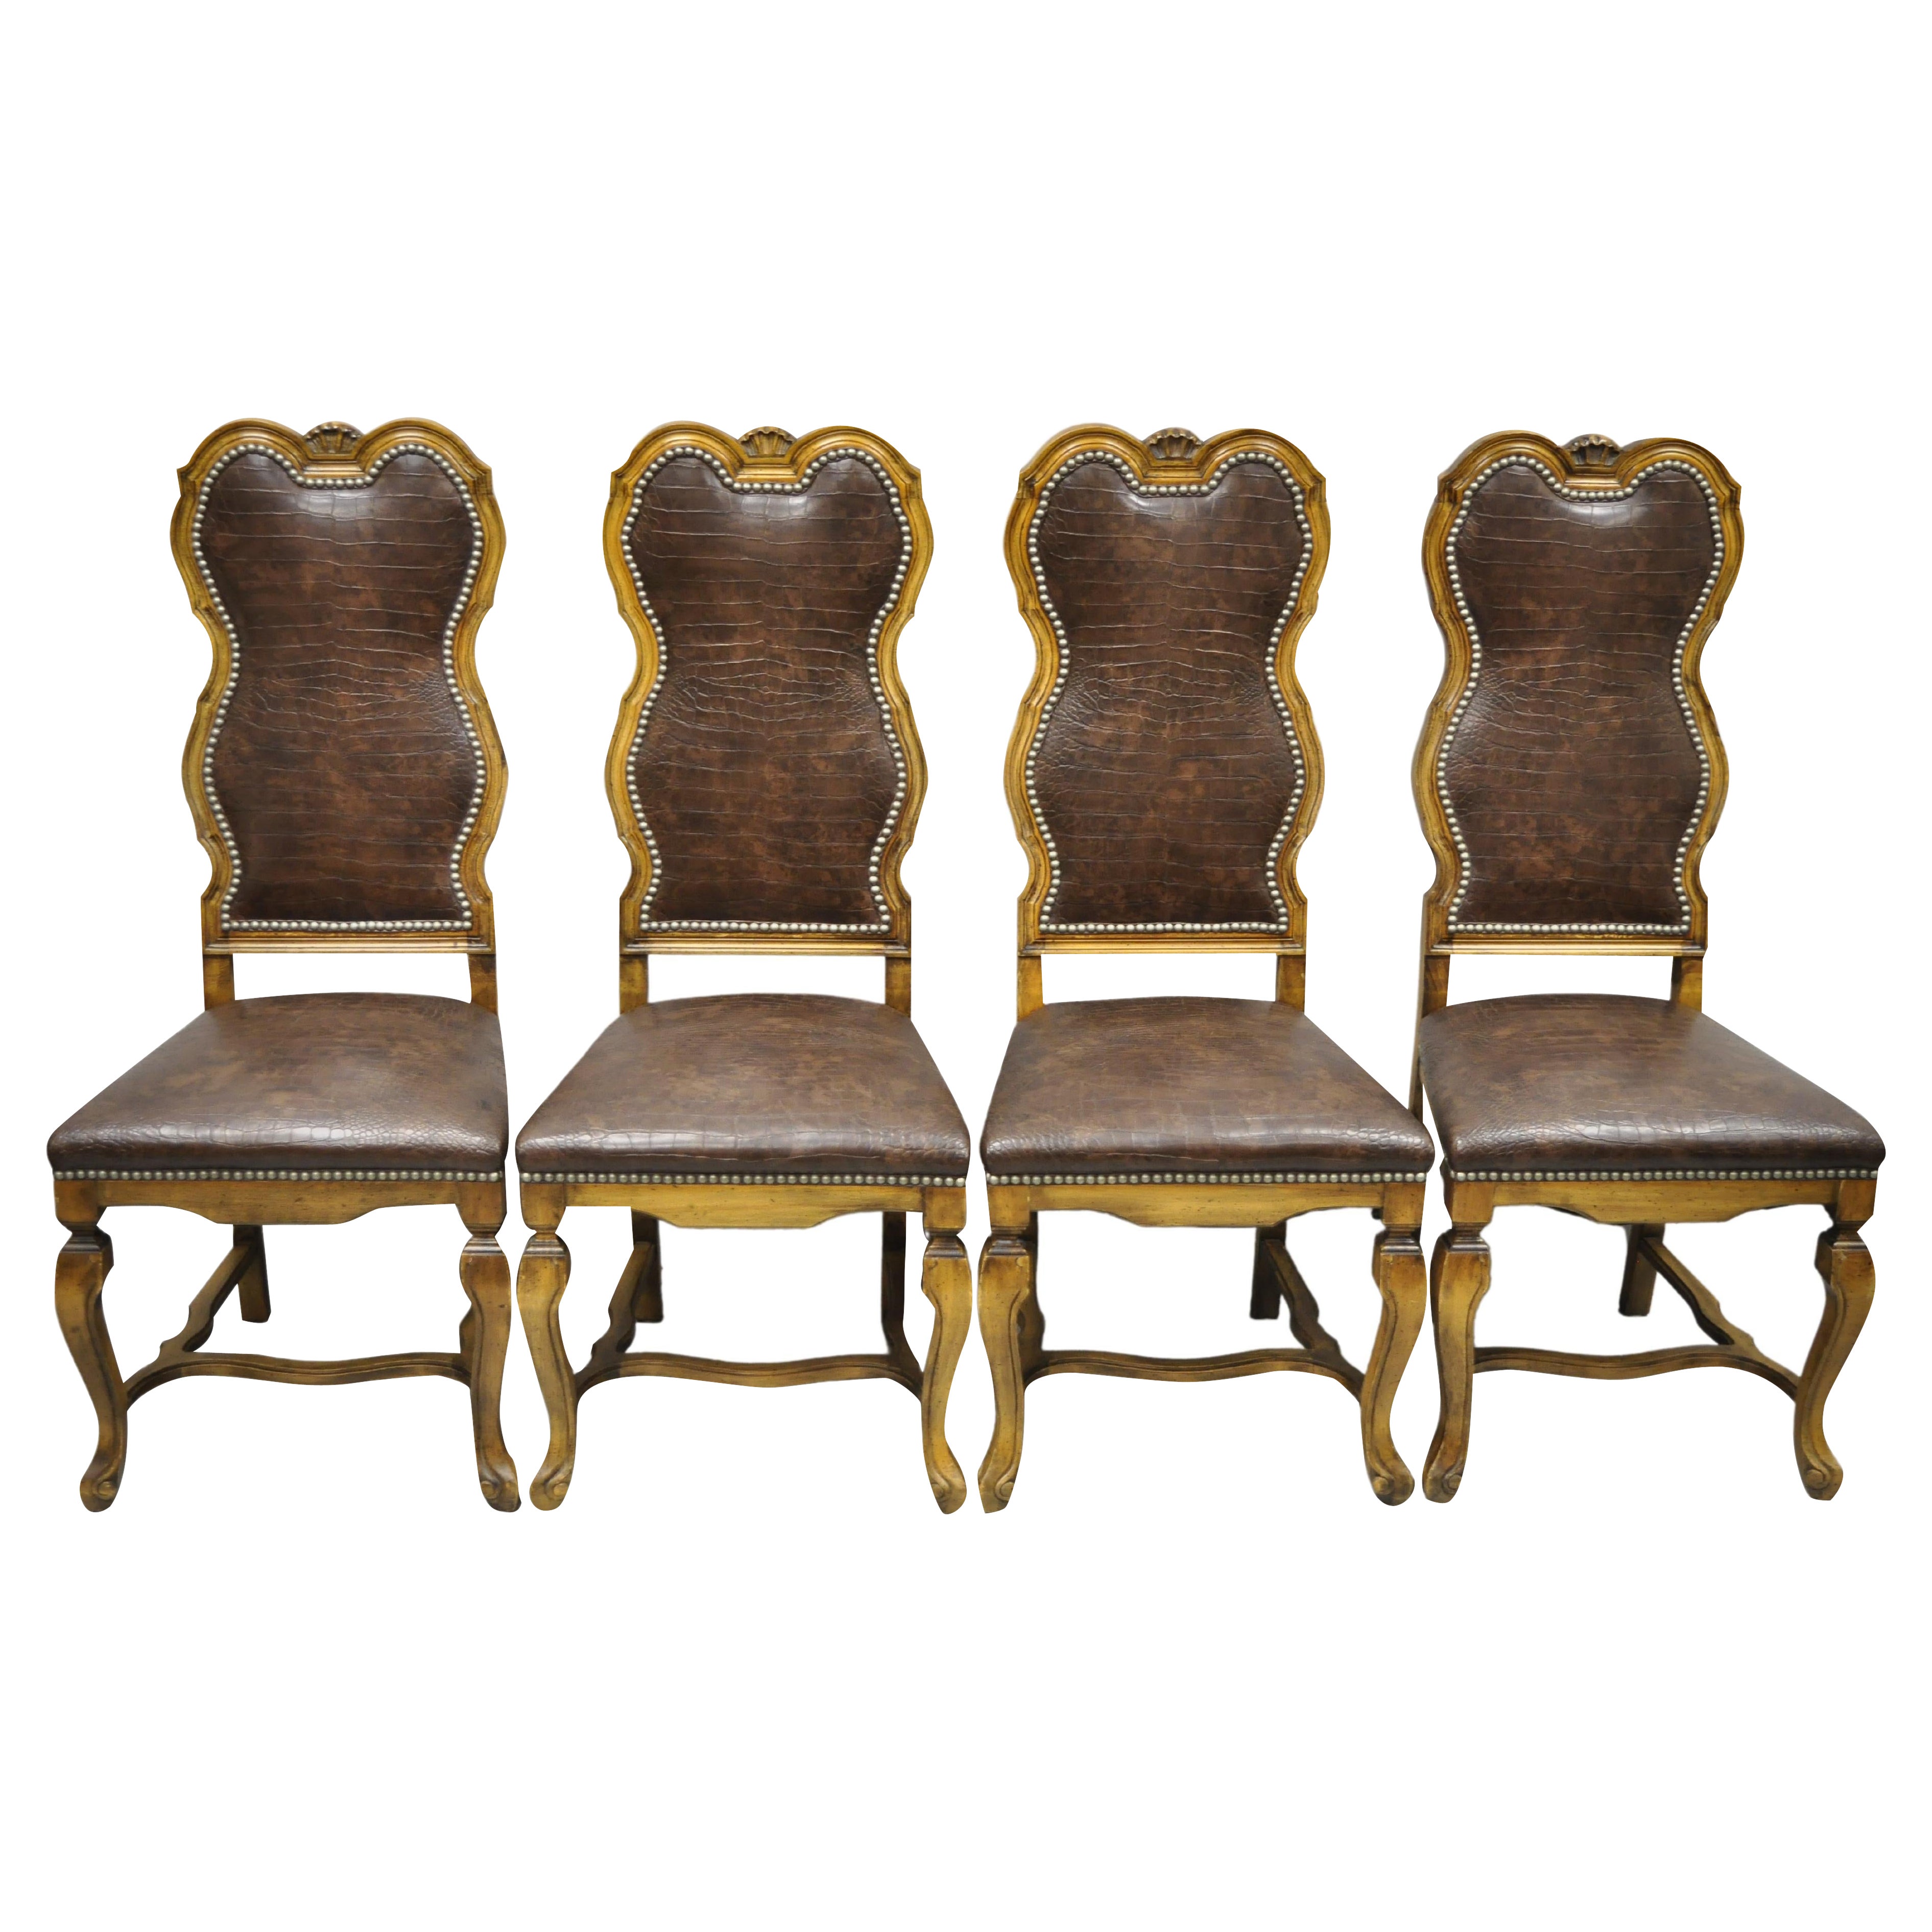 Chaises de salle à manger baroques italiennes rococo en bois sculpté à imprimé reptile marron, lot de 4